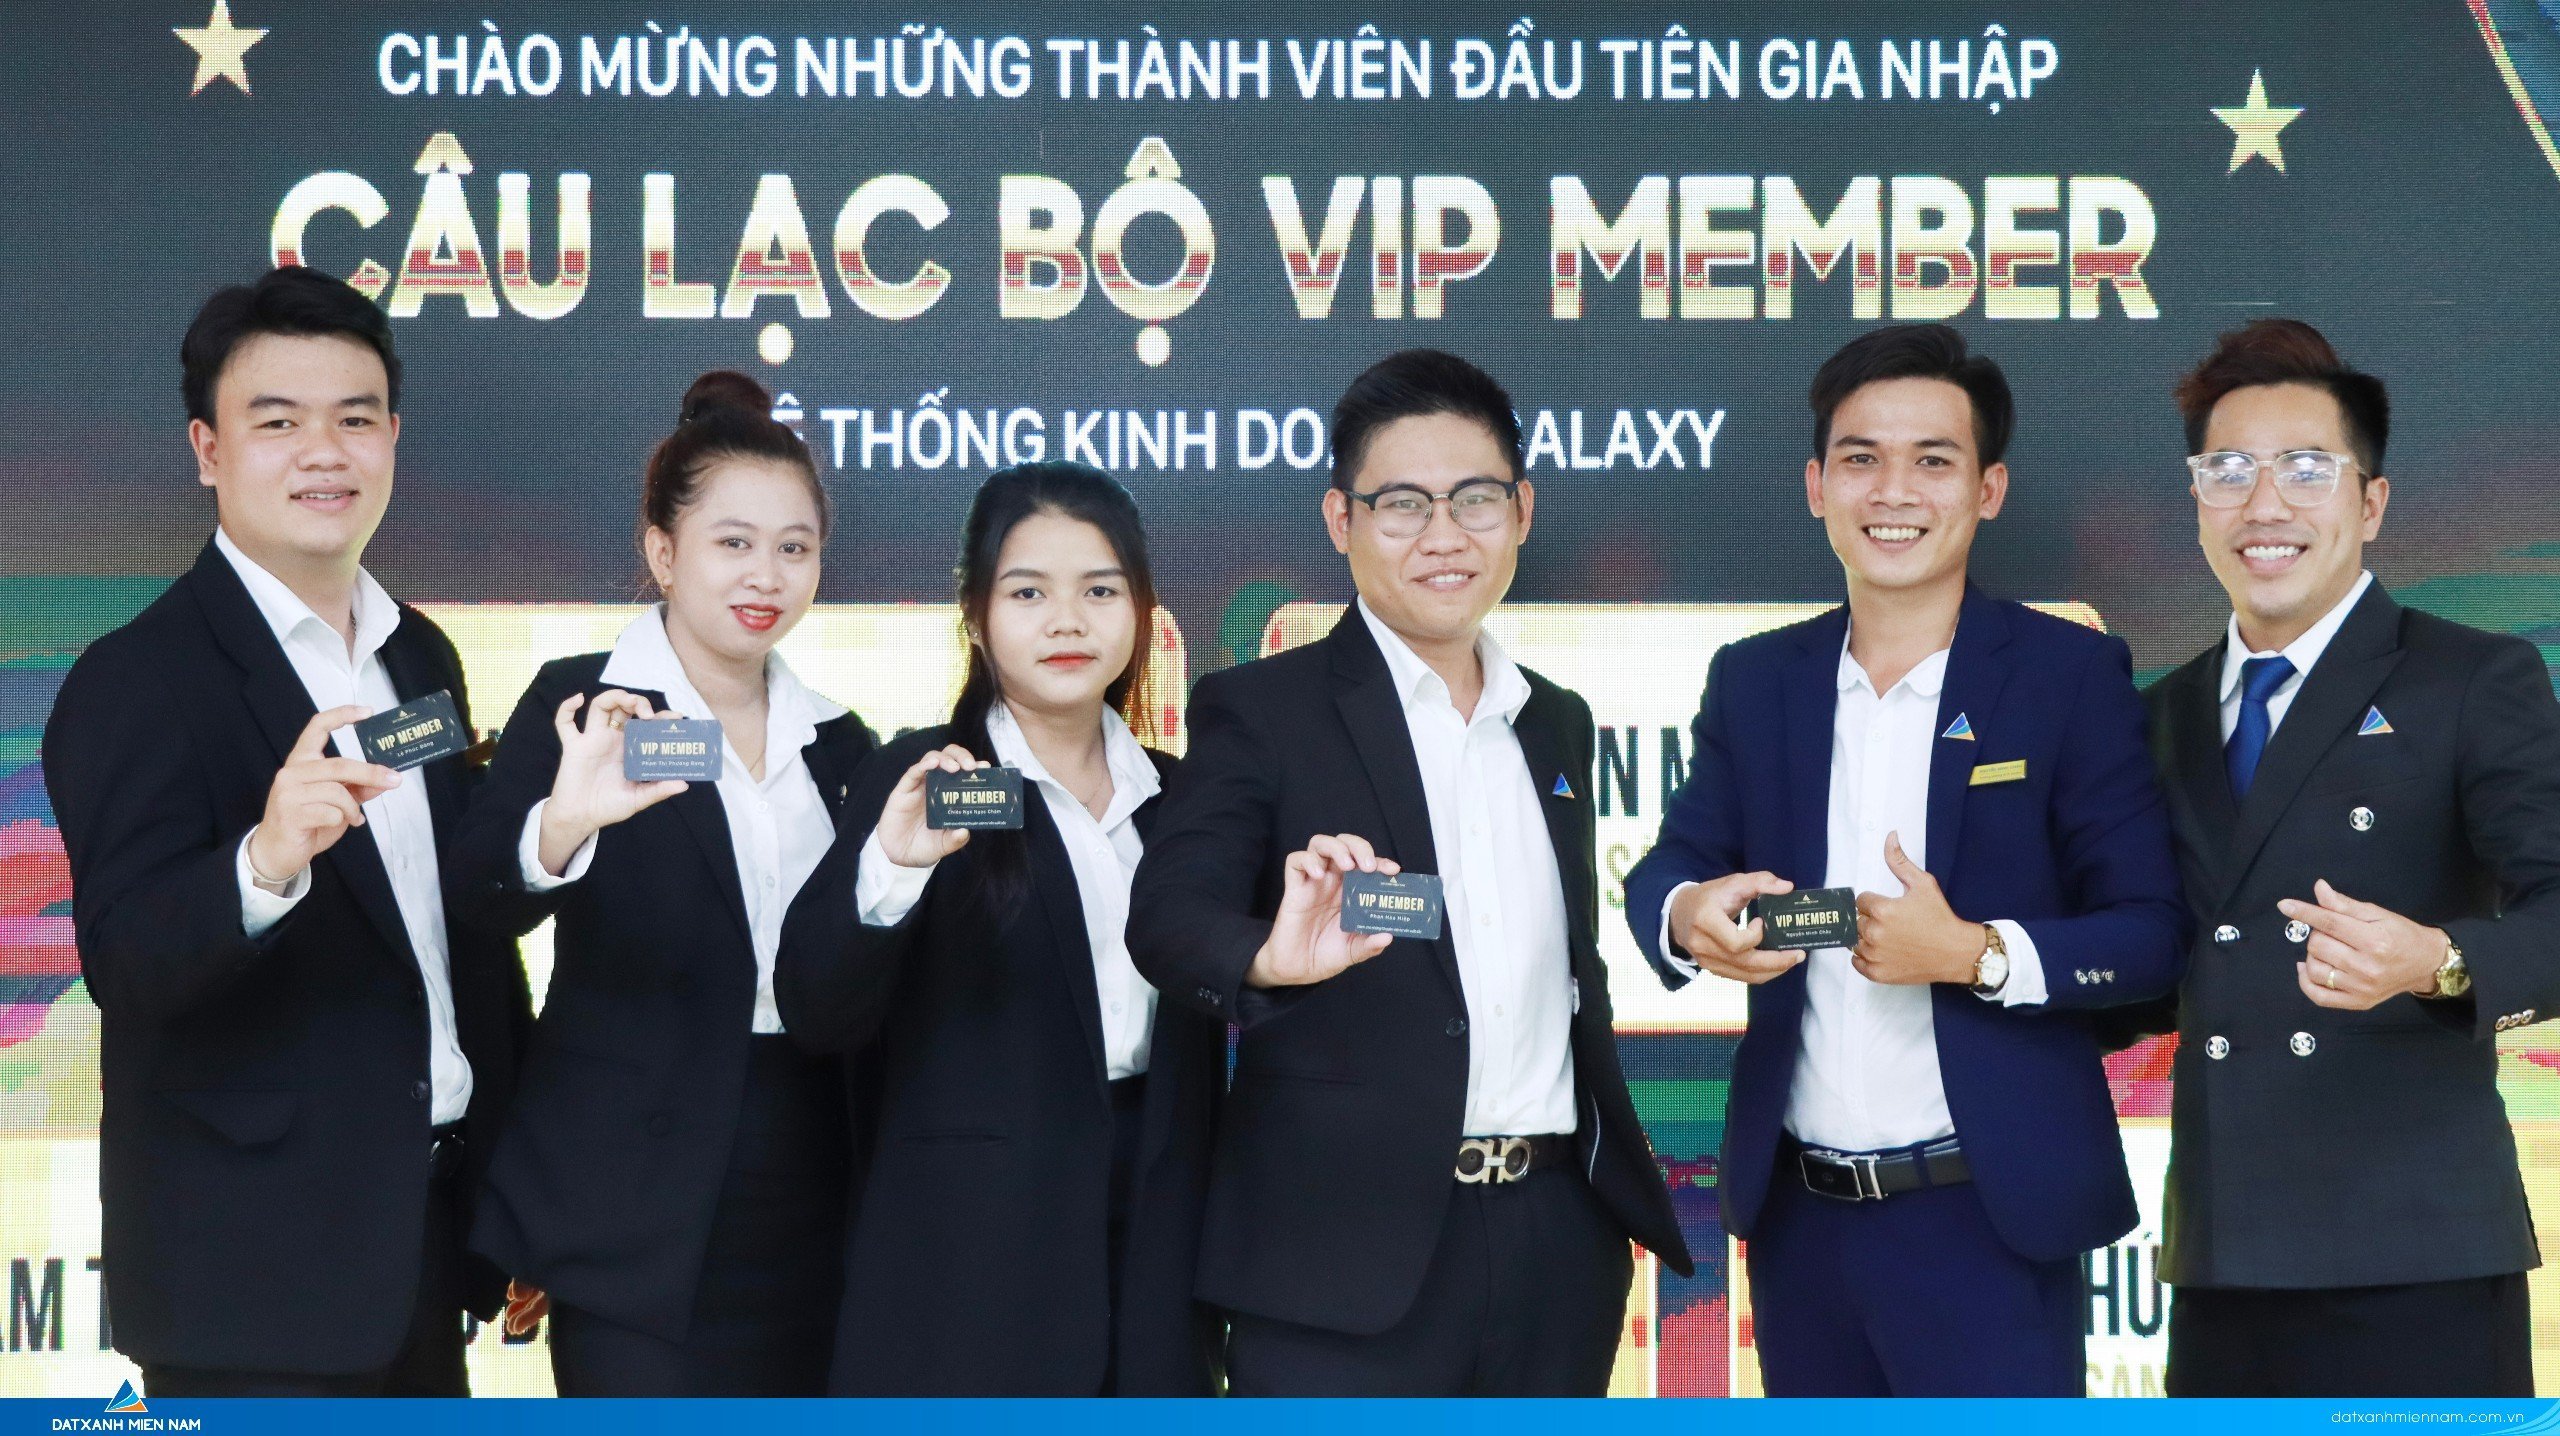 Câu lạc bộ VIP MEMBER chào đón thành viên kinh doanh xuất sắc đầu tiên gia nhập